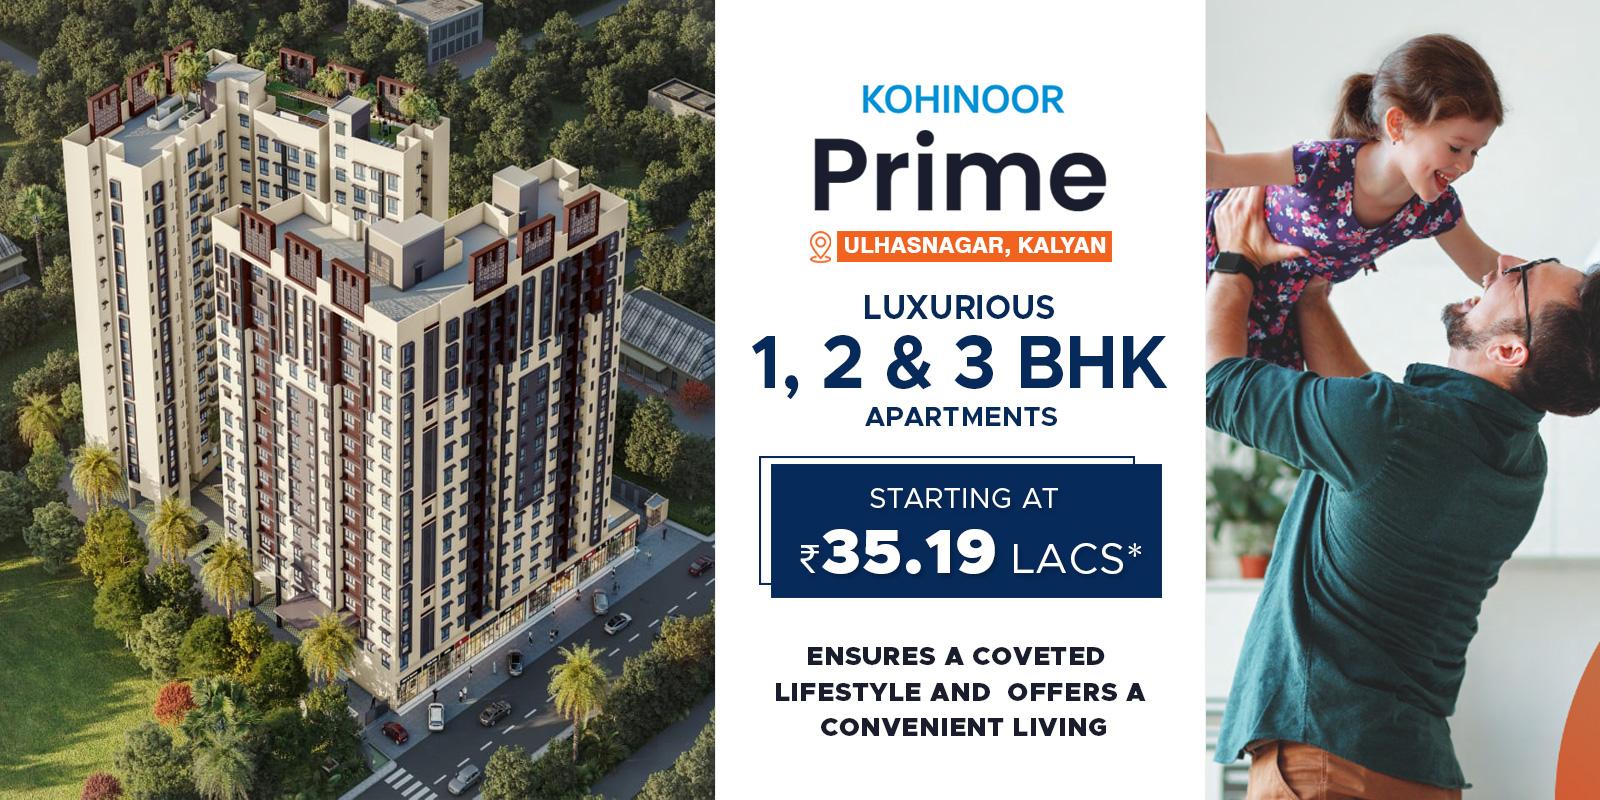 Kohinoor Prime Shahad-Kohinoor-Prime-banner-new2.jpg